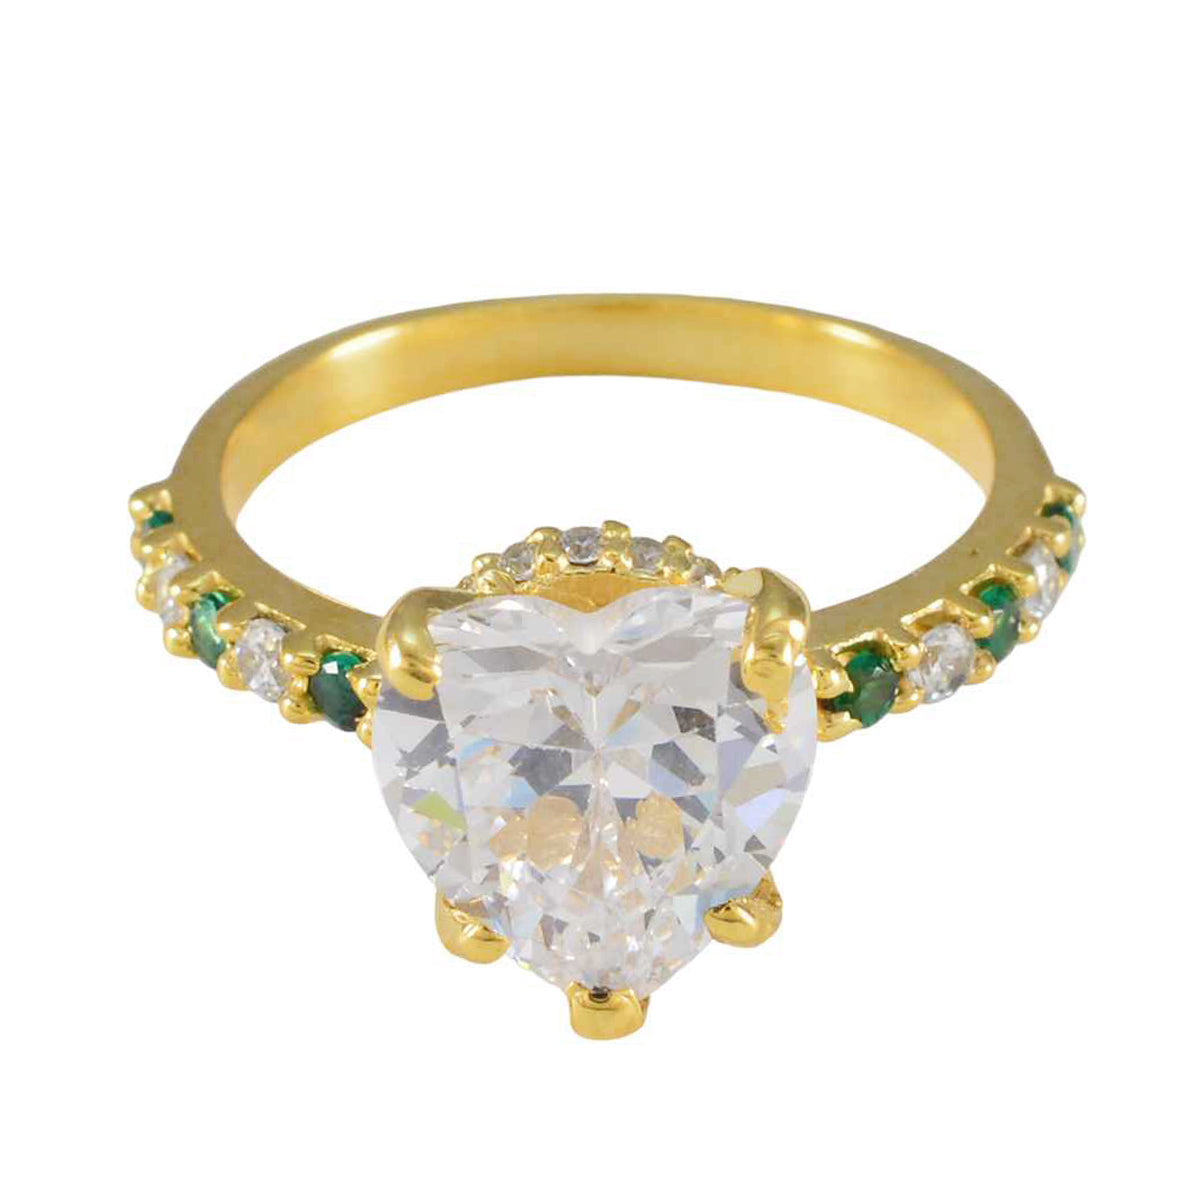 Riyo Wenselijke zilveren ring met geelgouden smaragdgroene CZ-steen Hartvorm Prong Setting Stijlvolle sieraden Nieuwjaarsring